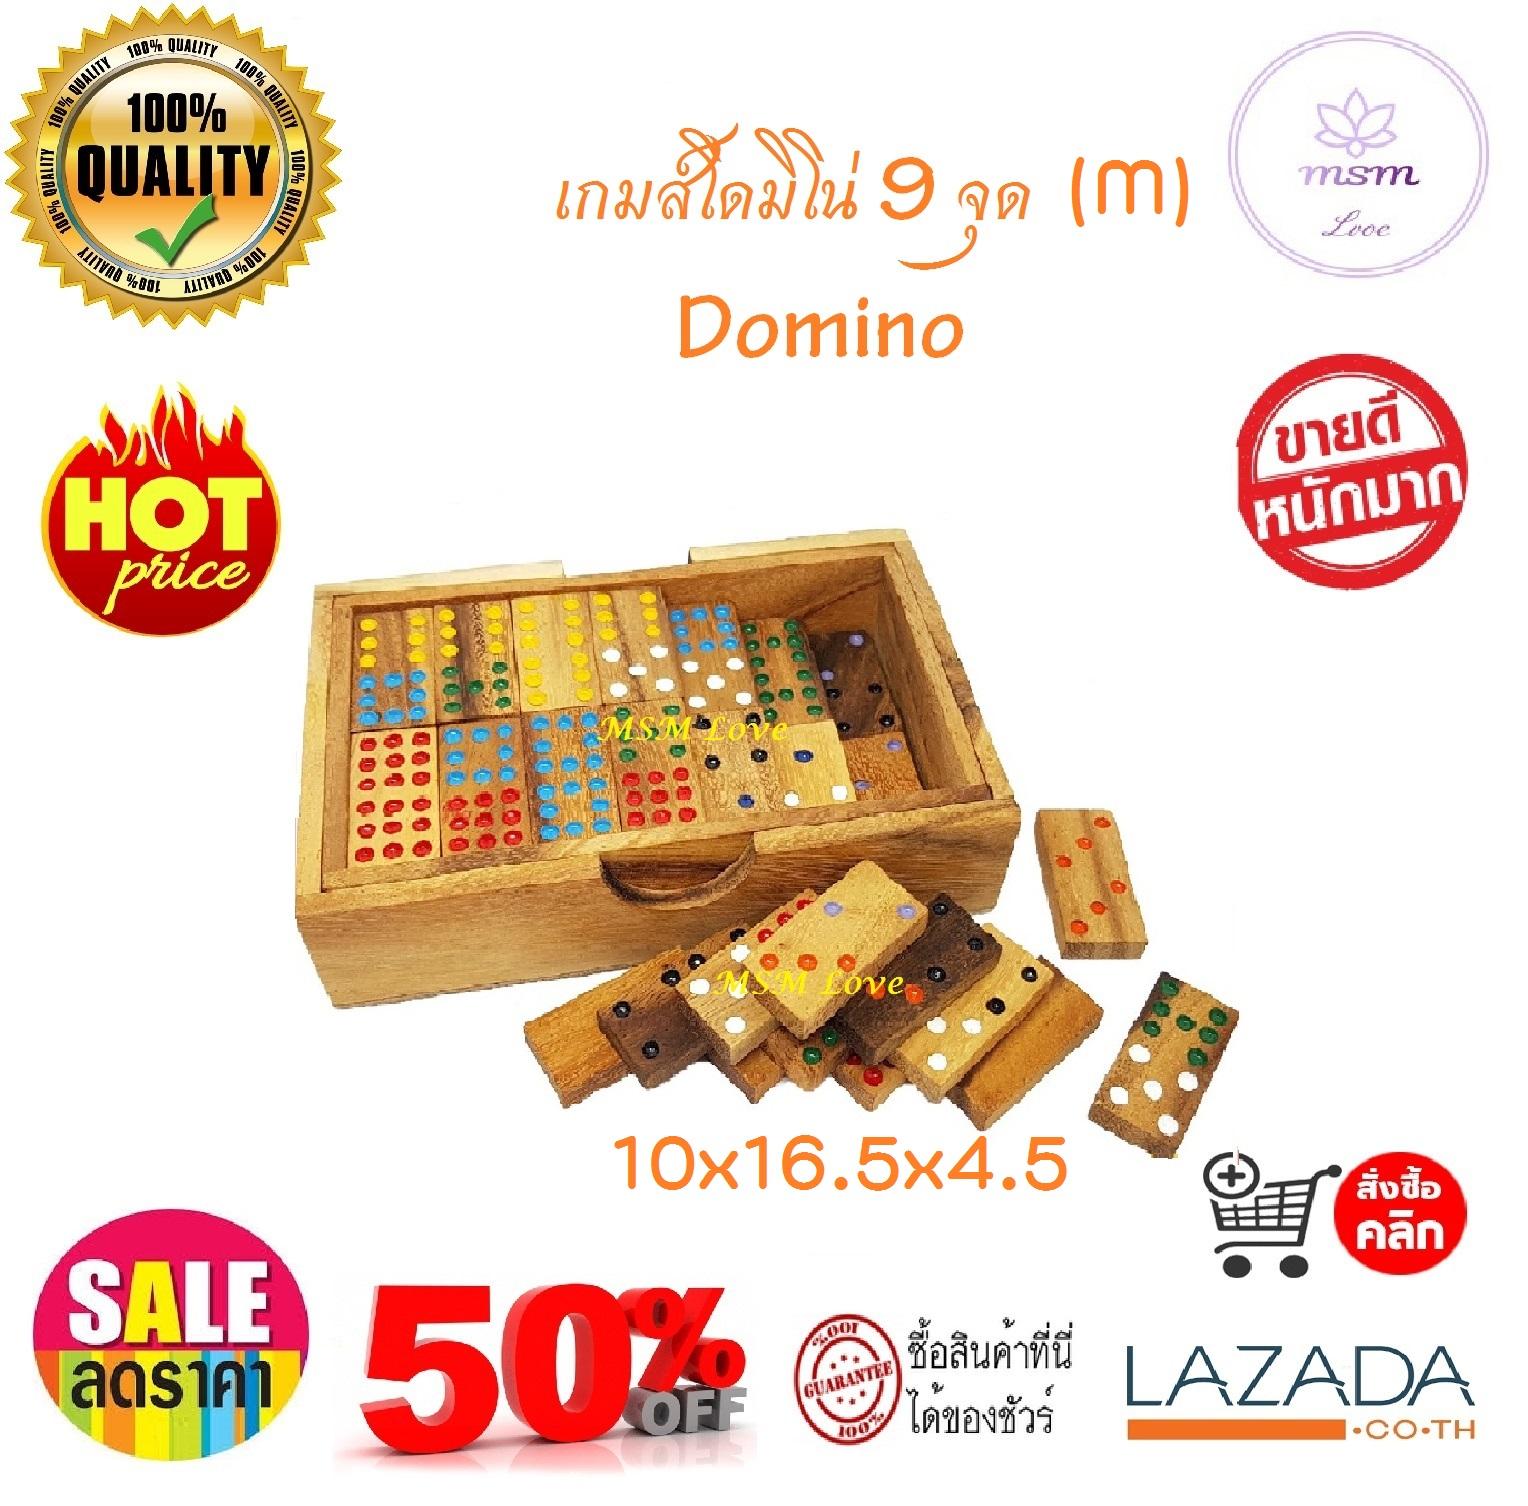 สุดคุ้ม!!  โดมิโน่ โดมิโน่ไม้ 9 จุด ชุดละ 56 ชิ้น ขนาดกลาง (M) 10x16.5x4.5 เซนติเมตร   Nine Domino Wood Domino Wood Toy ของเล่นไม้เสริมพัฒนาการ เสริมทักษะ ของเล่นเด็ก และผู้ใหญ่ ของเล่นไม้ ใช้เป็นของตกแต่ง ร้านและที่พักอาศัย สุดคลาสสิค